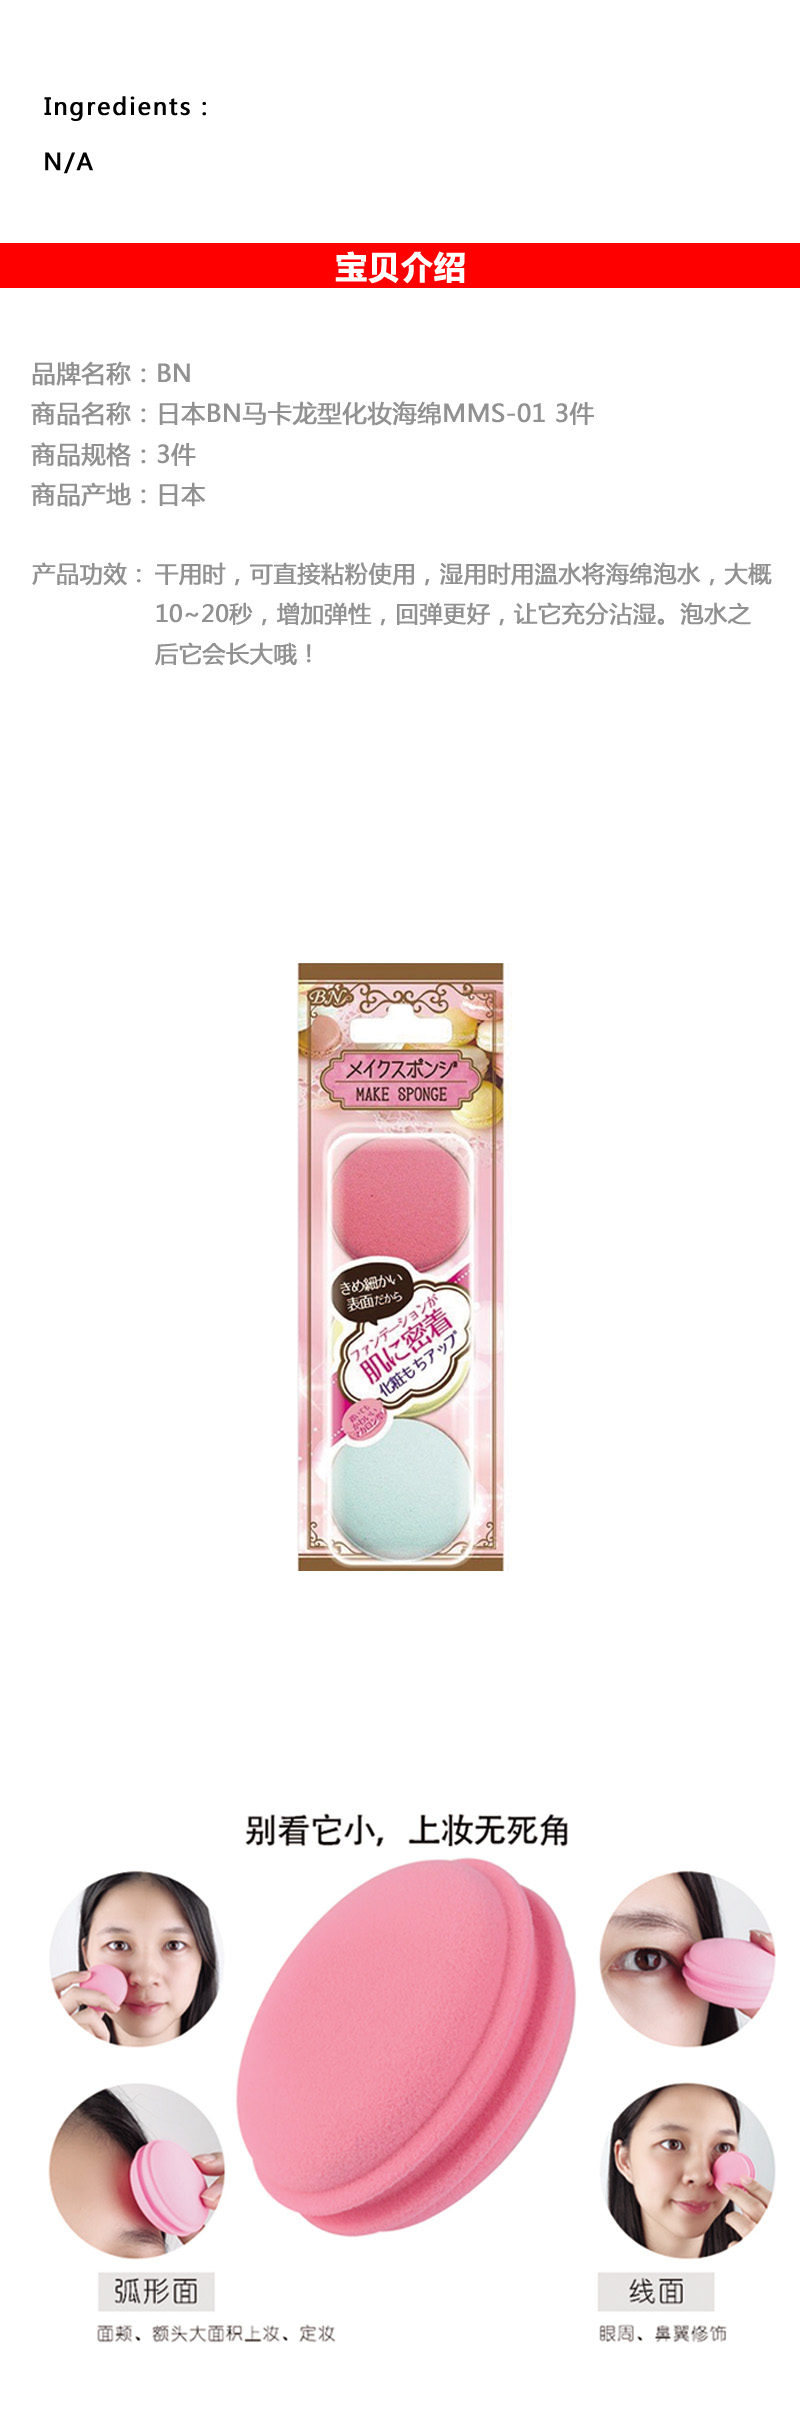 日本bn化马卡龙型妆海绵mms 01 3件 Bn Macaron Type Makeup Sponge 3pcs